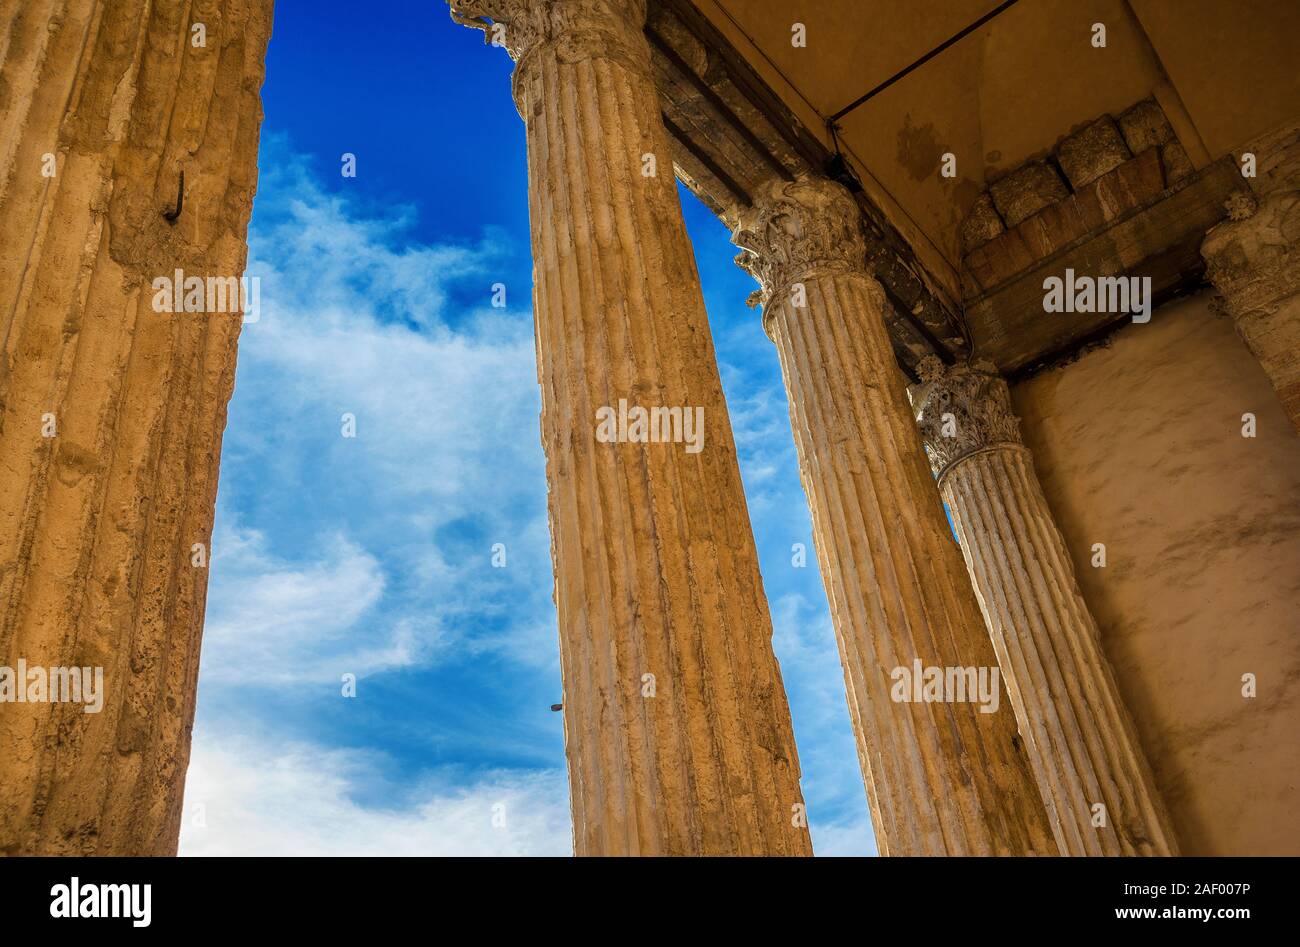 Antike römische Architektur und Archäologie in Assisi. Tempel der Minerva alten Spalten mit Sonnenuntergang goldenen Farbton und Wolken (1. Jahrhundert v. Chr.) Stockfoto